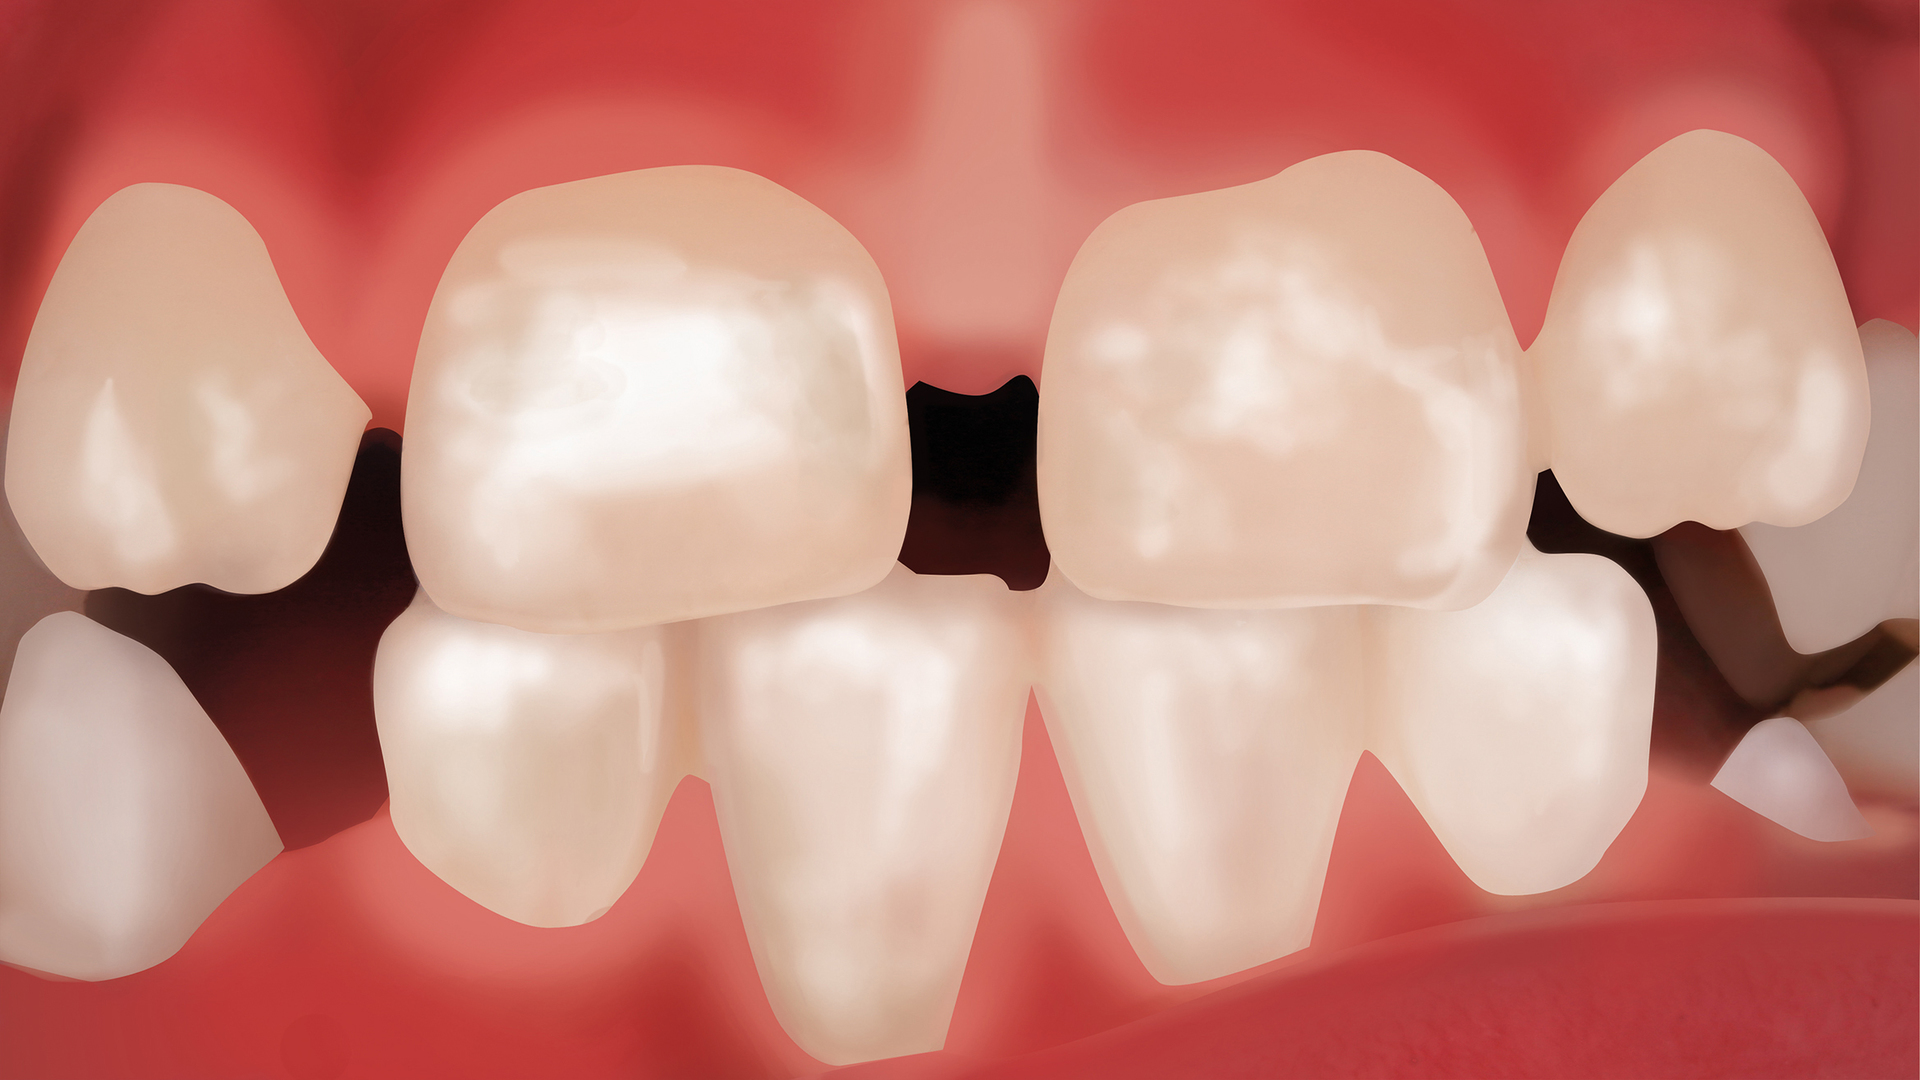 Graue verfärbung zahn Zahnverfärbung